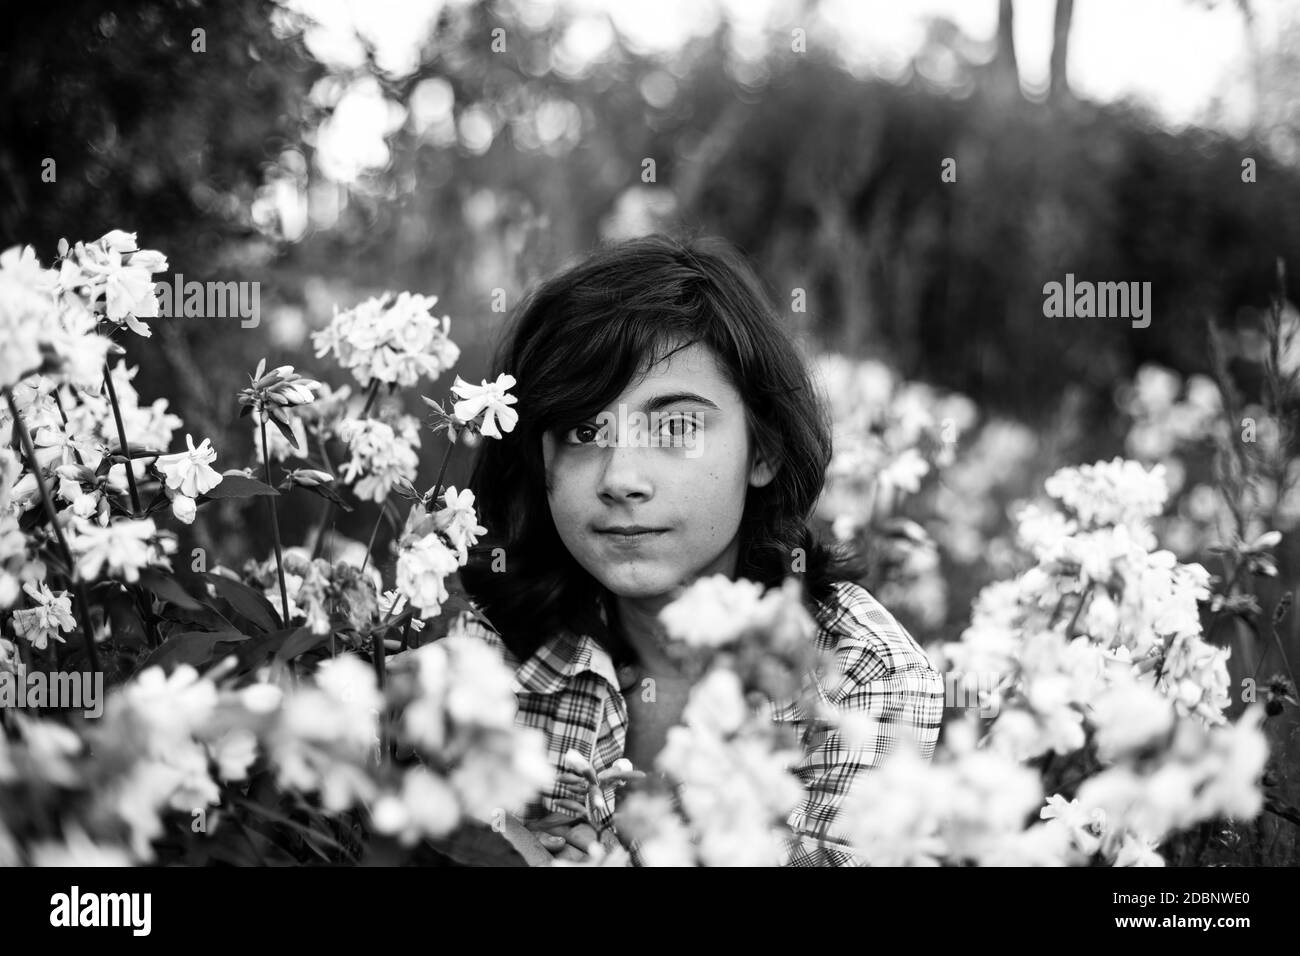 Schwarz behaart teen Mädchen im Garten unter Blumen. Schwarzweiß-Foto. Stockfoto